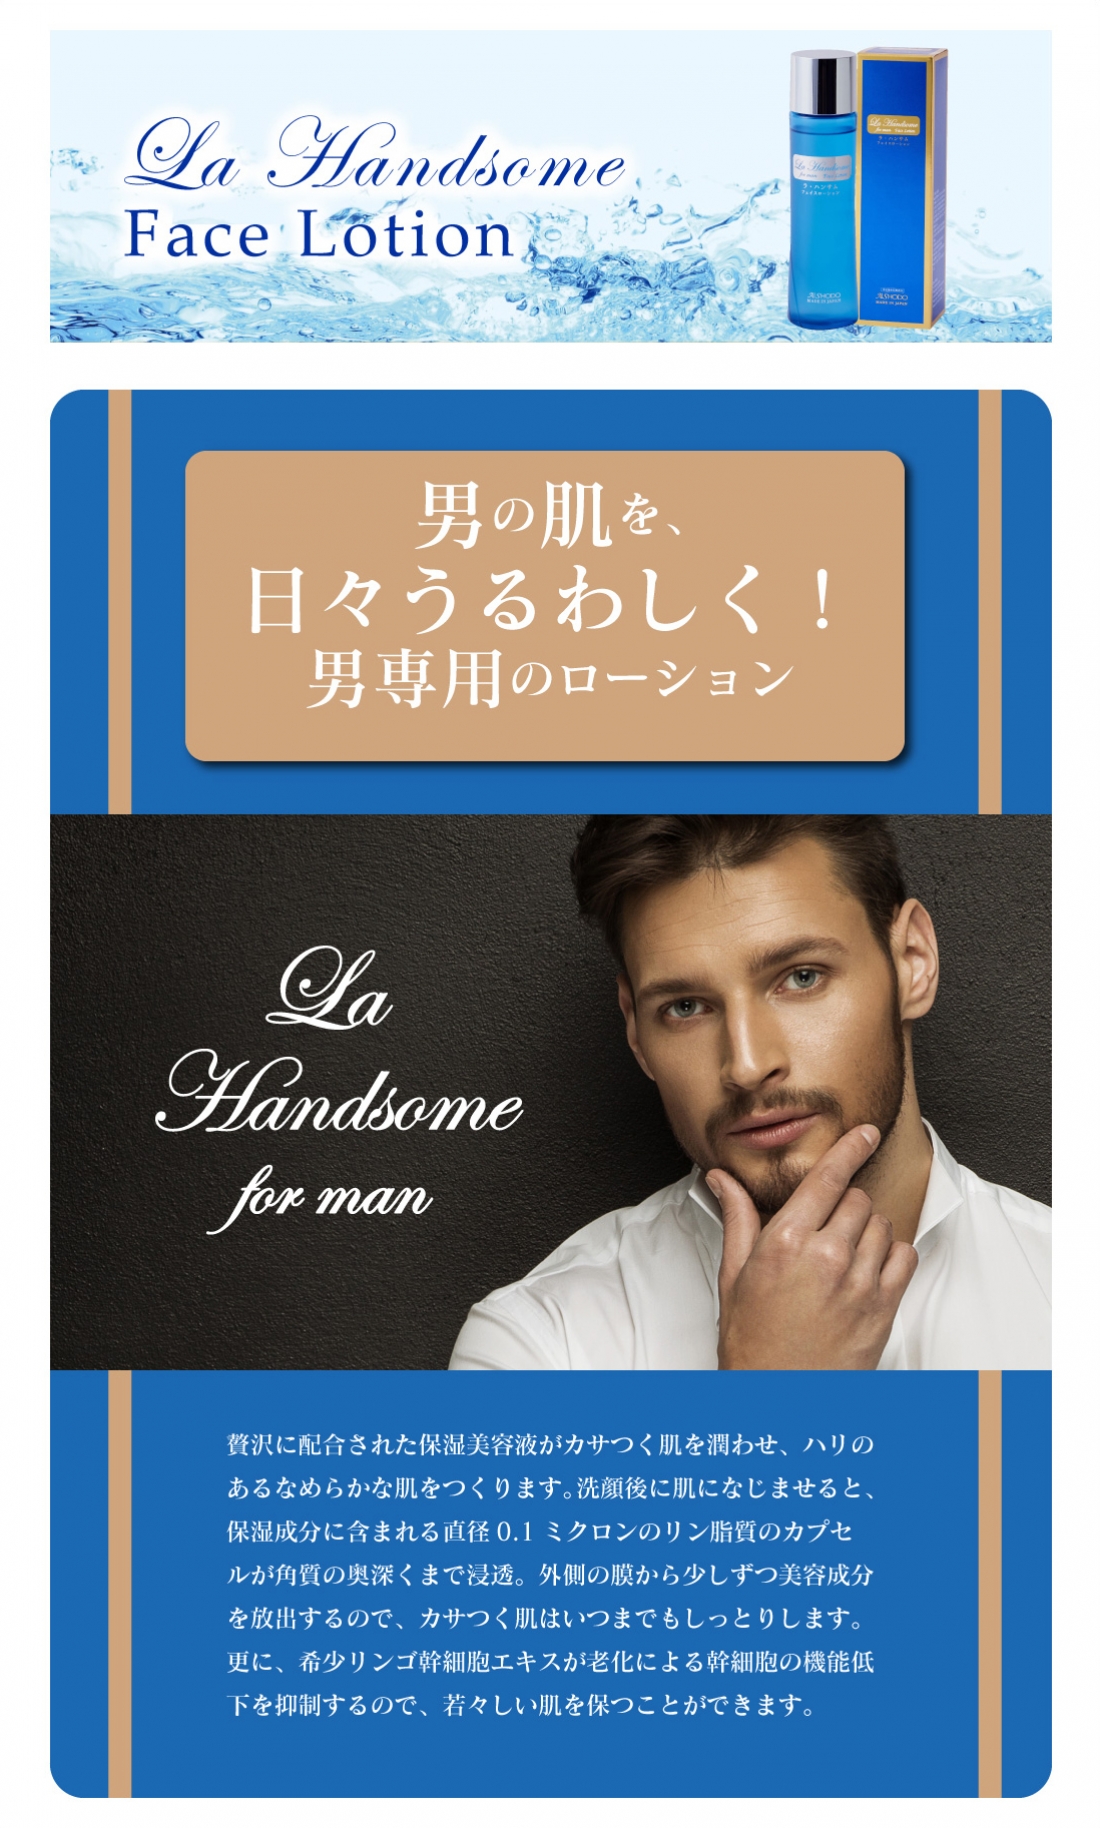 ラ・ハンサム フェイスローション(化粧水)
La Handsome Face Lotion